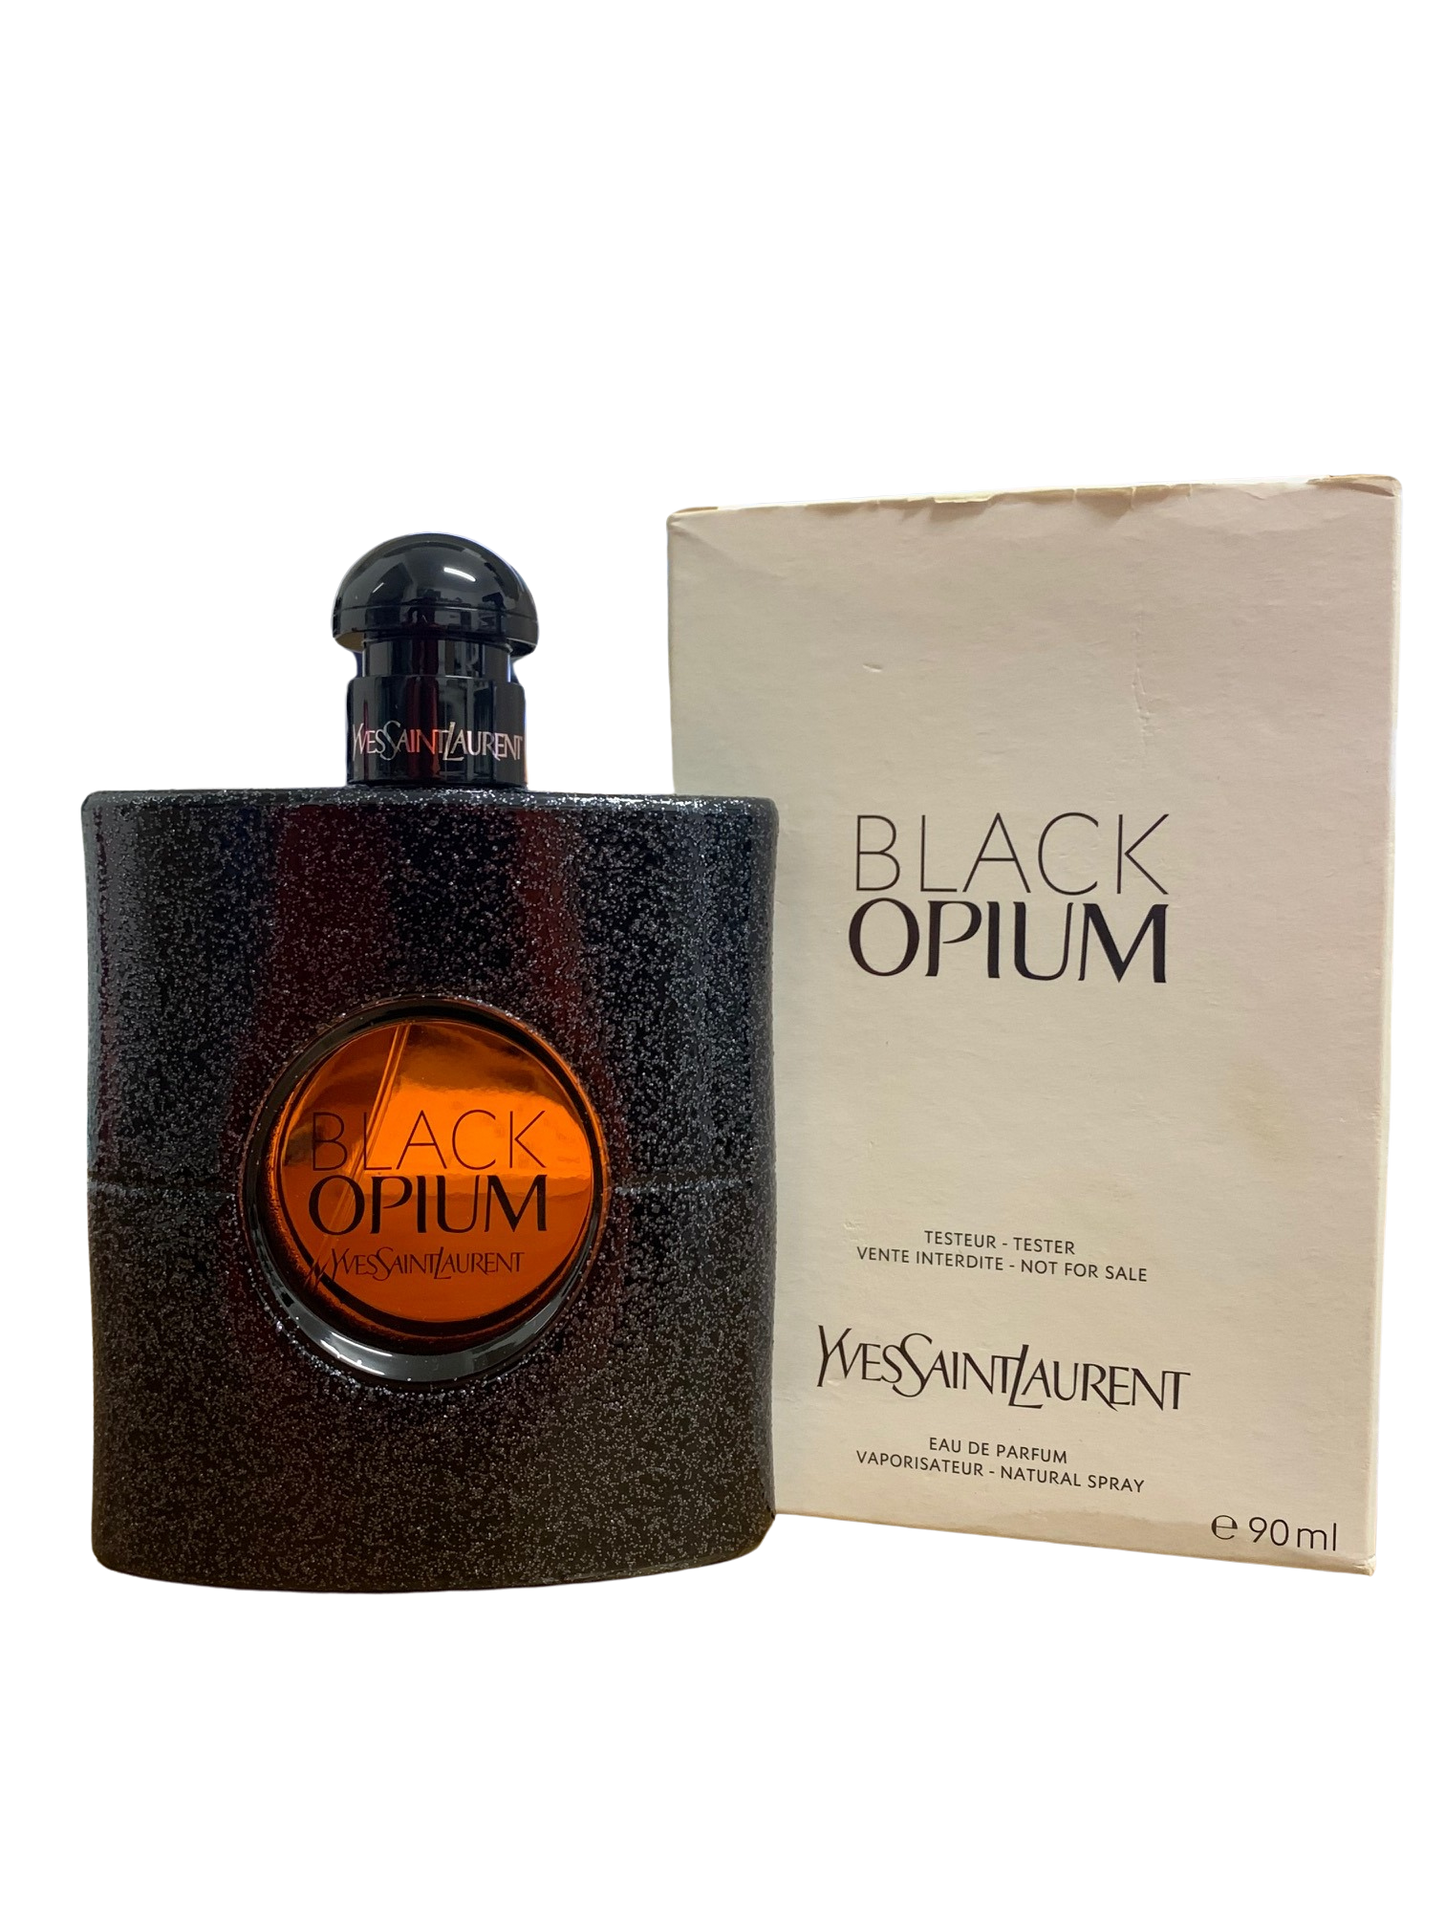 Yves Saint Laurent "Black Opium" eau de parfum 90ml